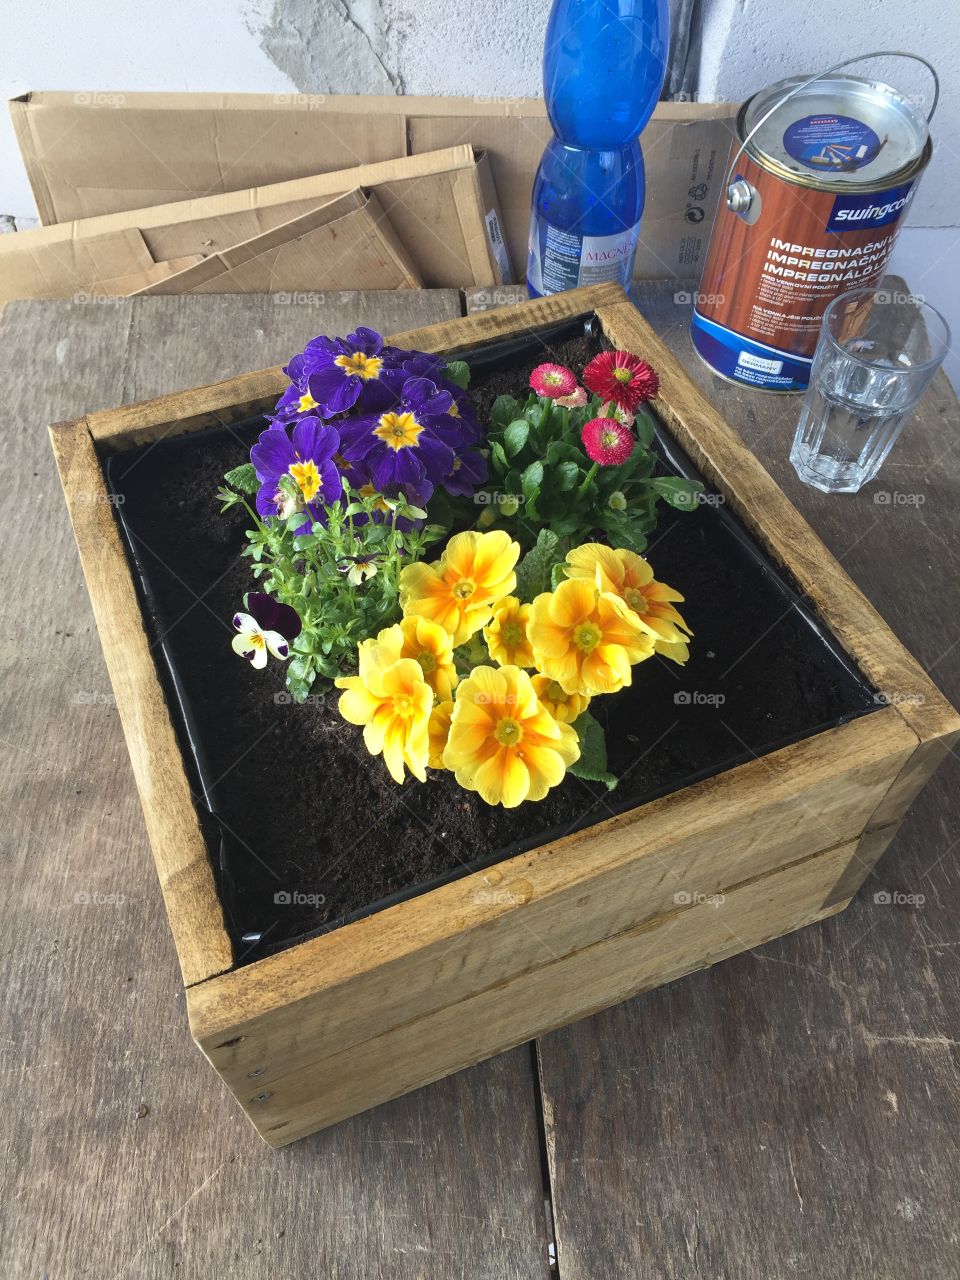 DIY - flower pot